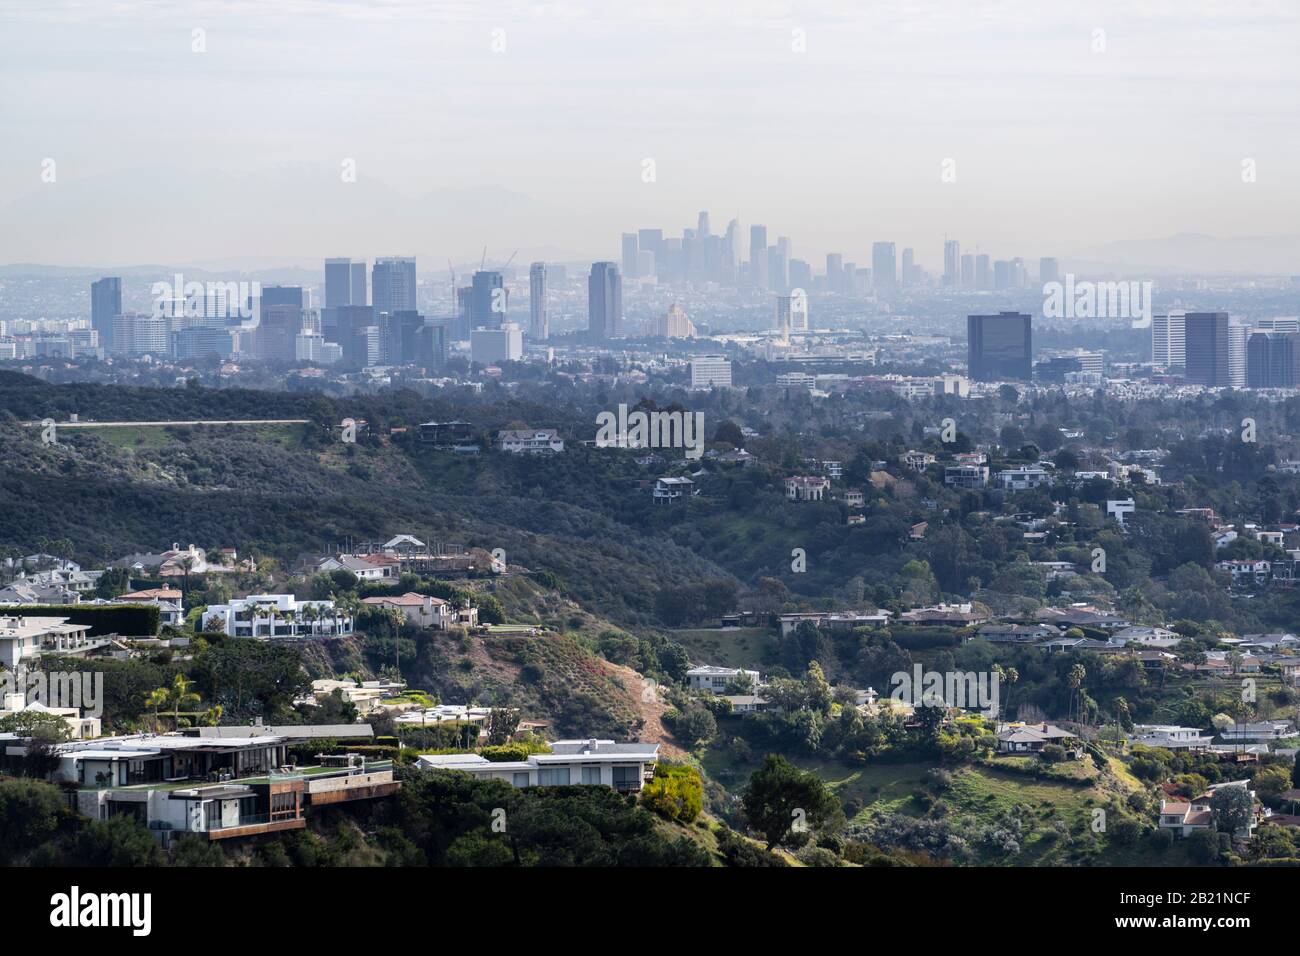 Canyon Homes con vista smoggy del paesaggio urbano di Century City e dei grattacieli del centro di Los Angeles. Foto Stock